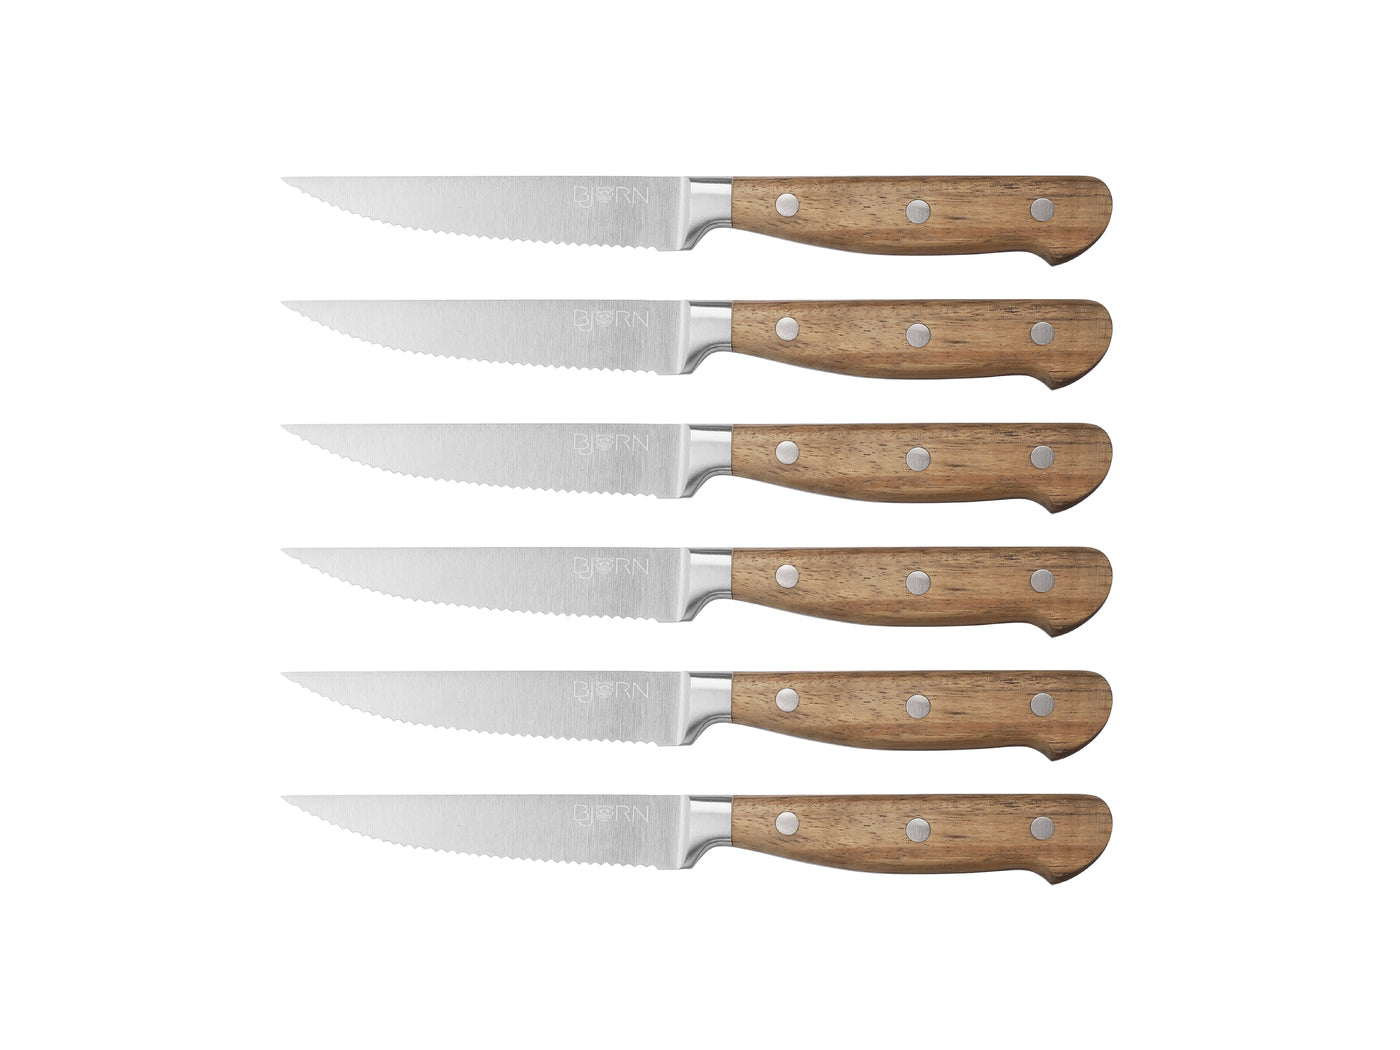 Couteaux à steak JAKOB - 6 pièces